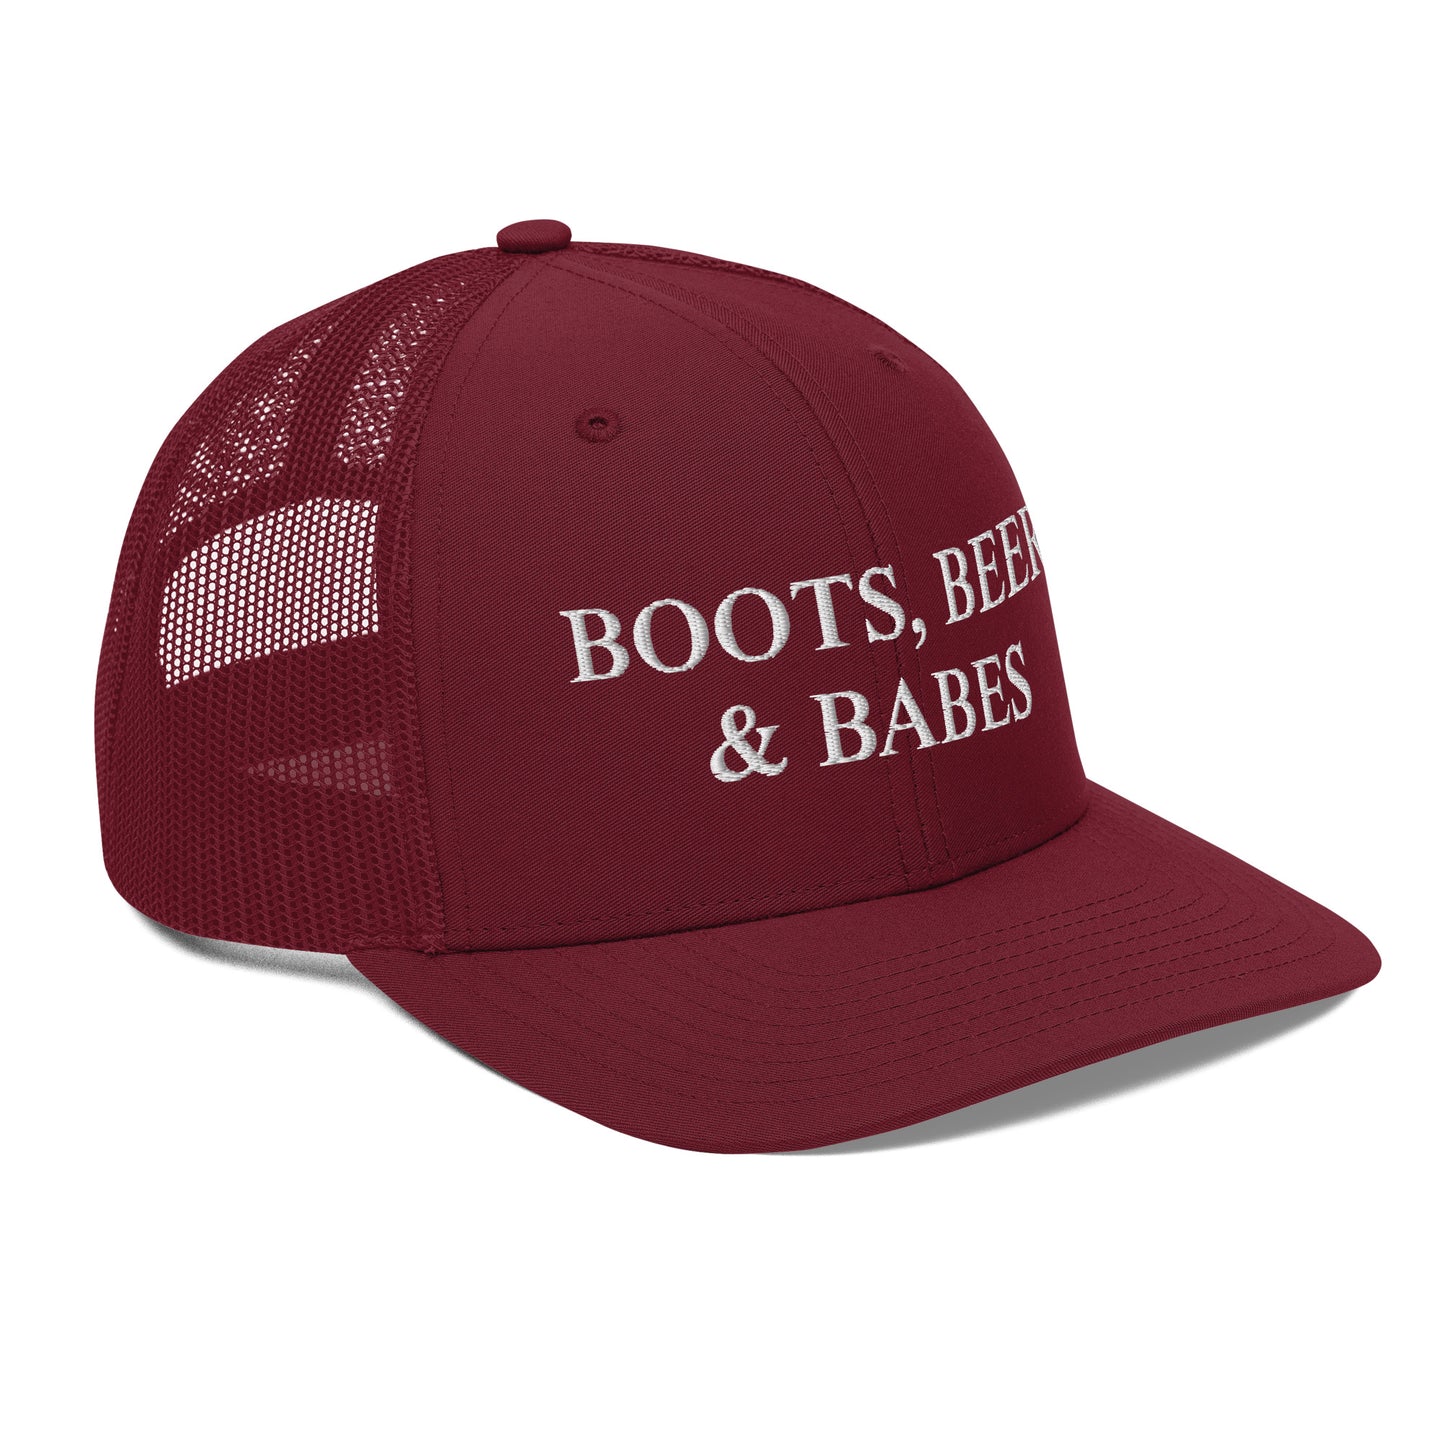 Boots, Beer & Babes Trucker Cap